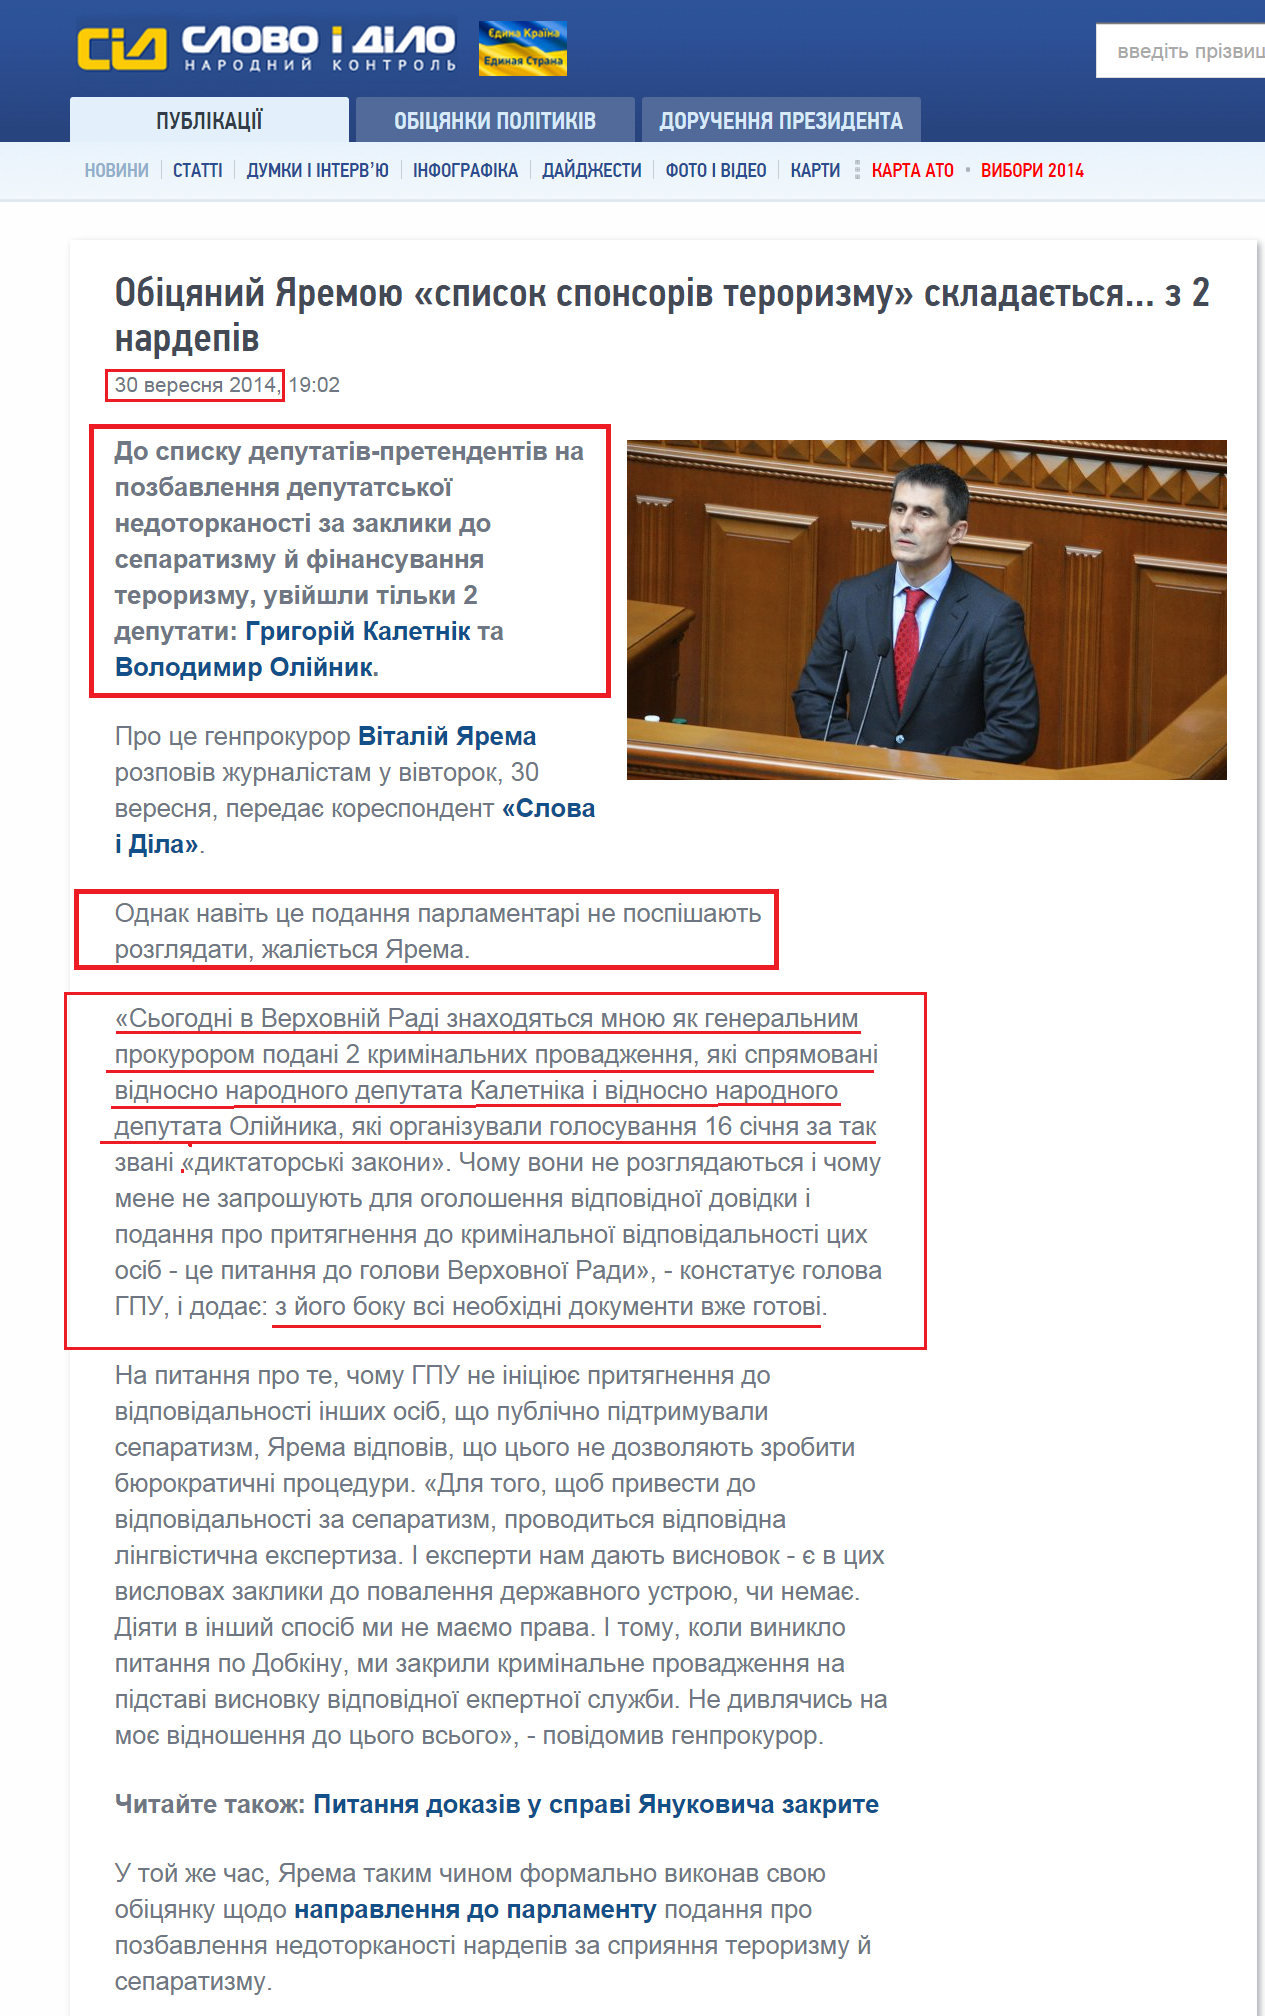 http://www.slovoidilo.ua/news/5036/2014-09-30/obecshannyj-yaremoj-spisok-sponsorov-terrorizma-sostoit--iz-2-nardepov.html